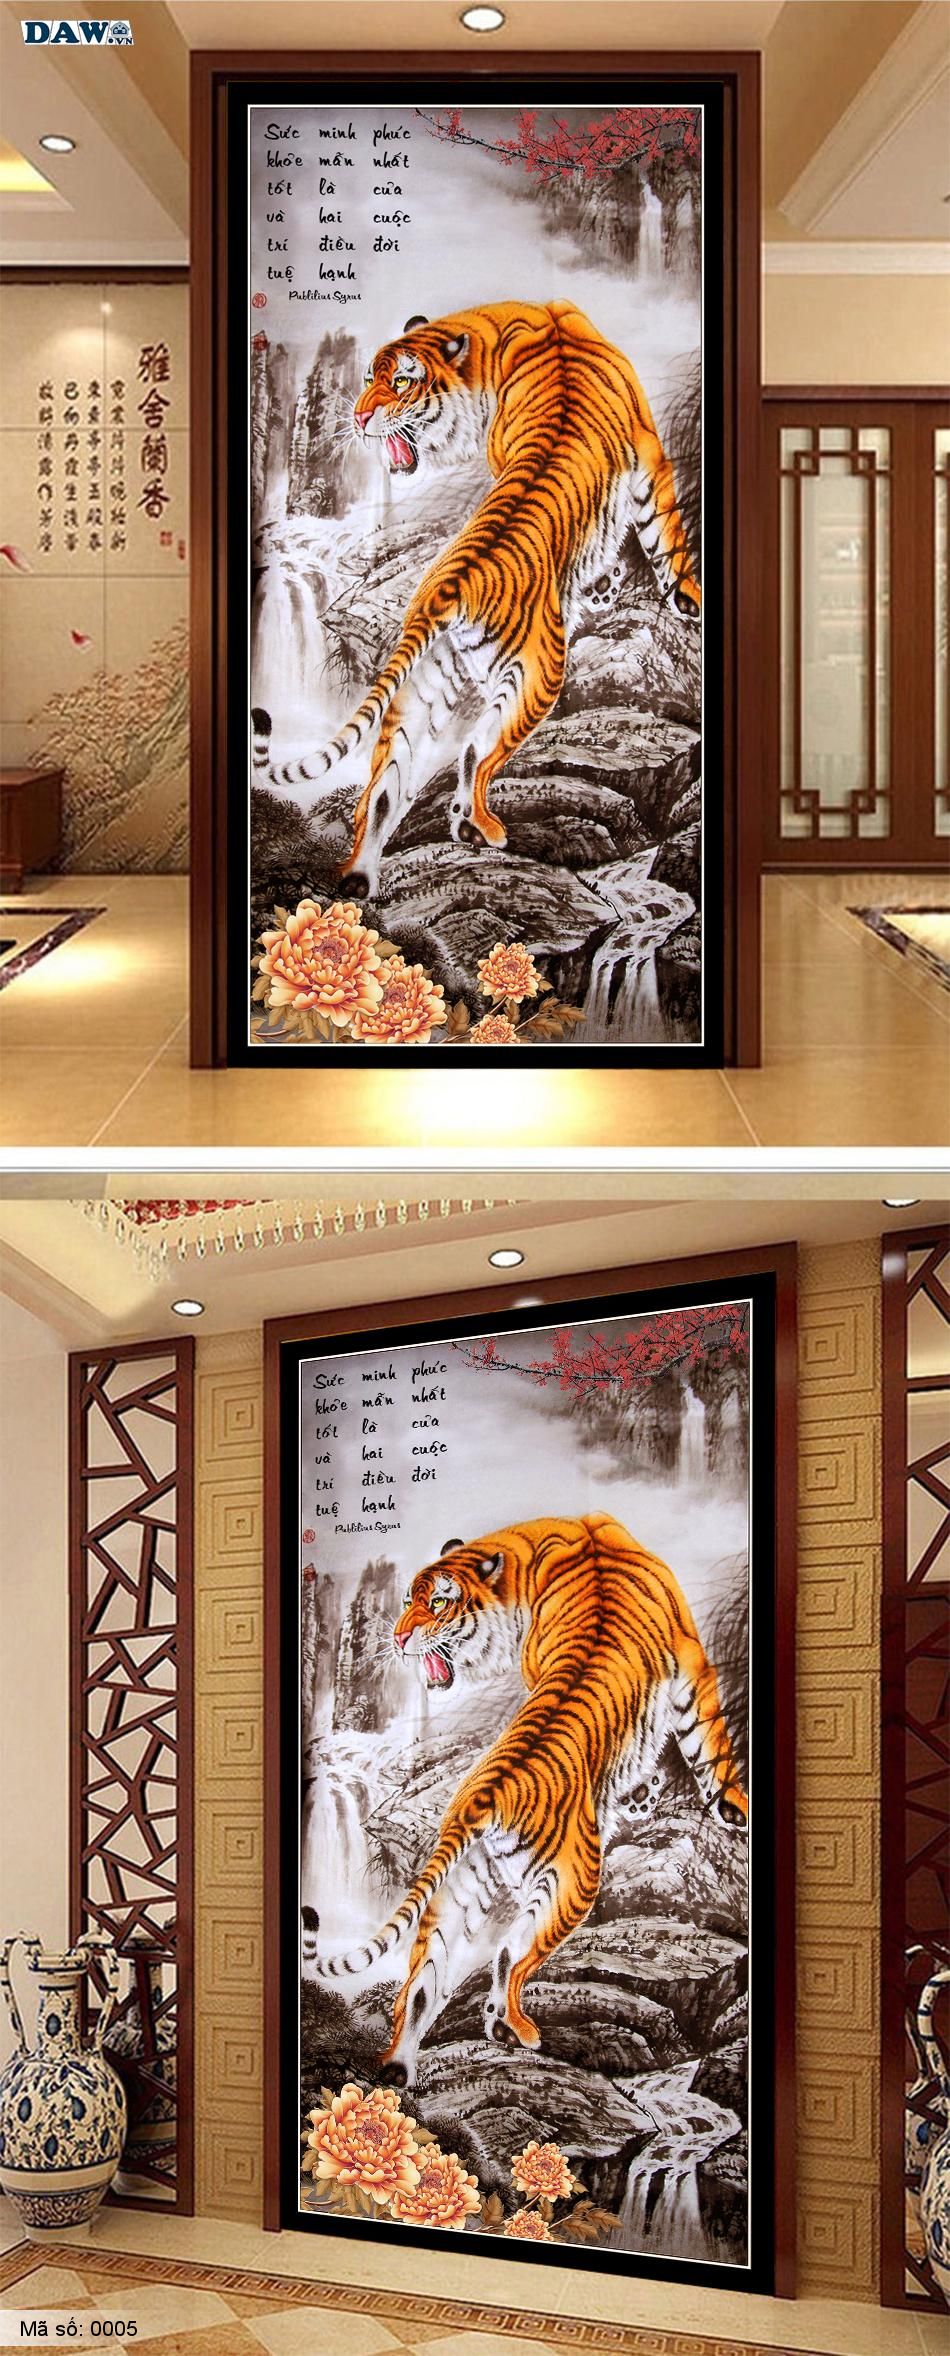 Tranh hổ, tranh dán tường con hổ, tranh vẽ con hổ, chúa sơn lâm, tranh cọp, tranh beo 0005